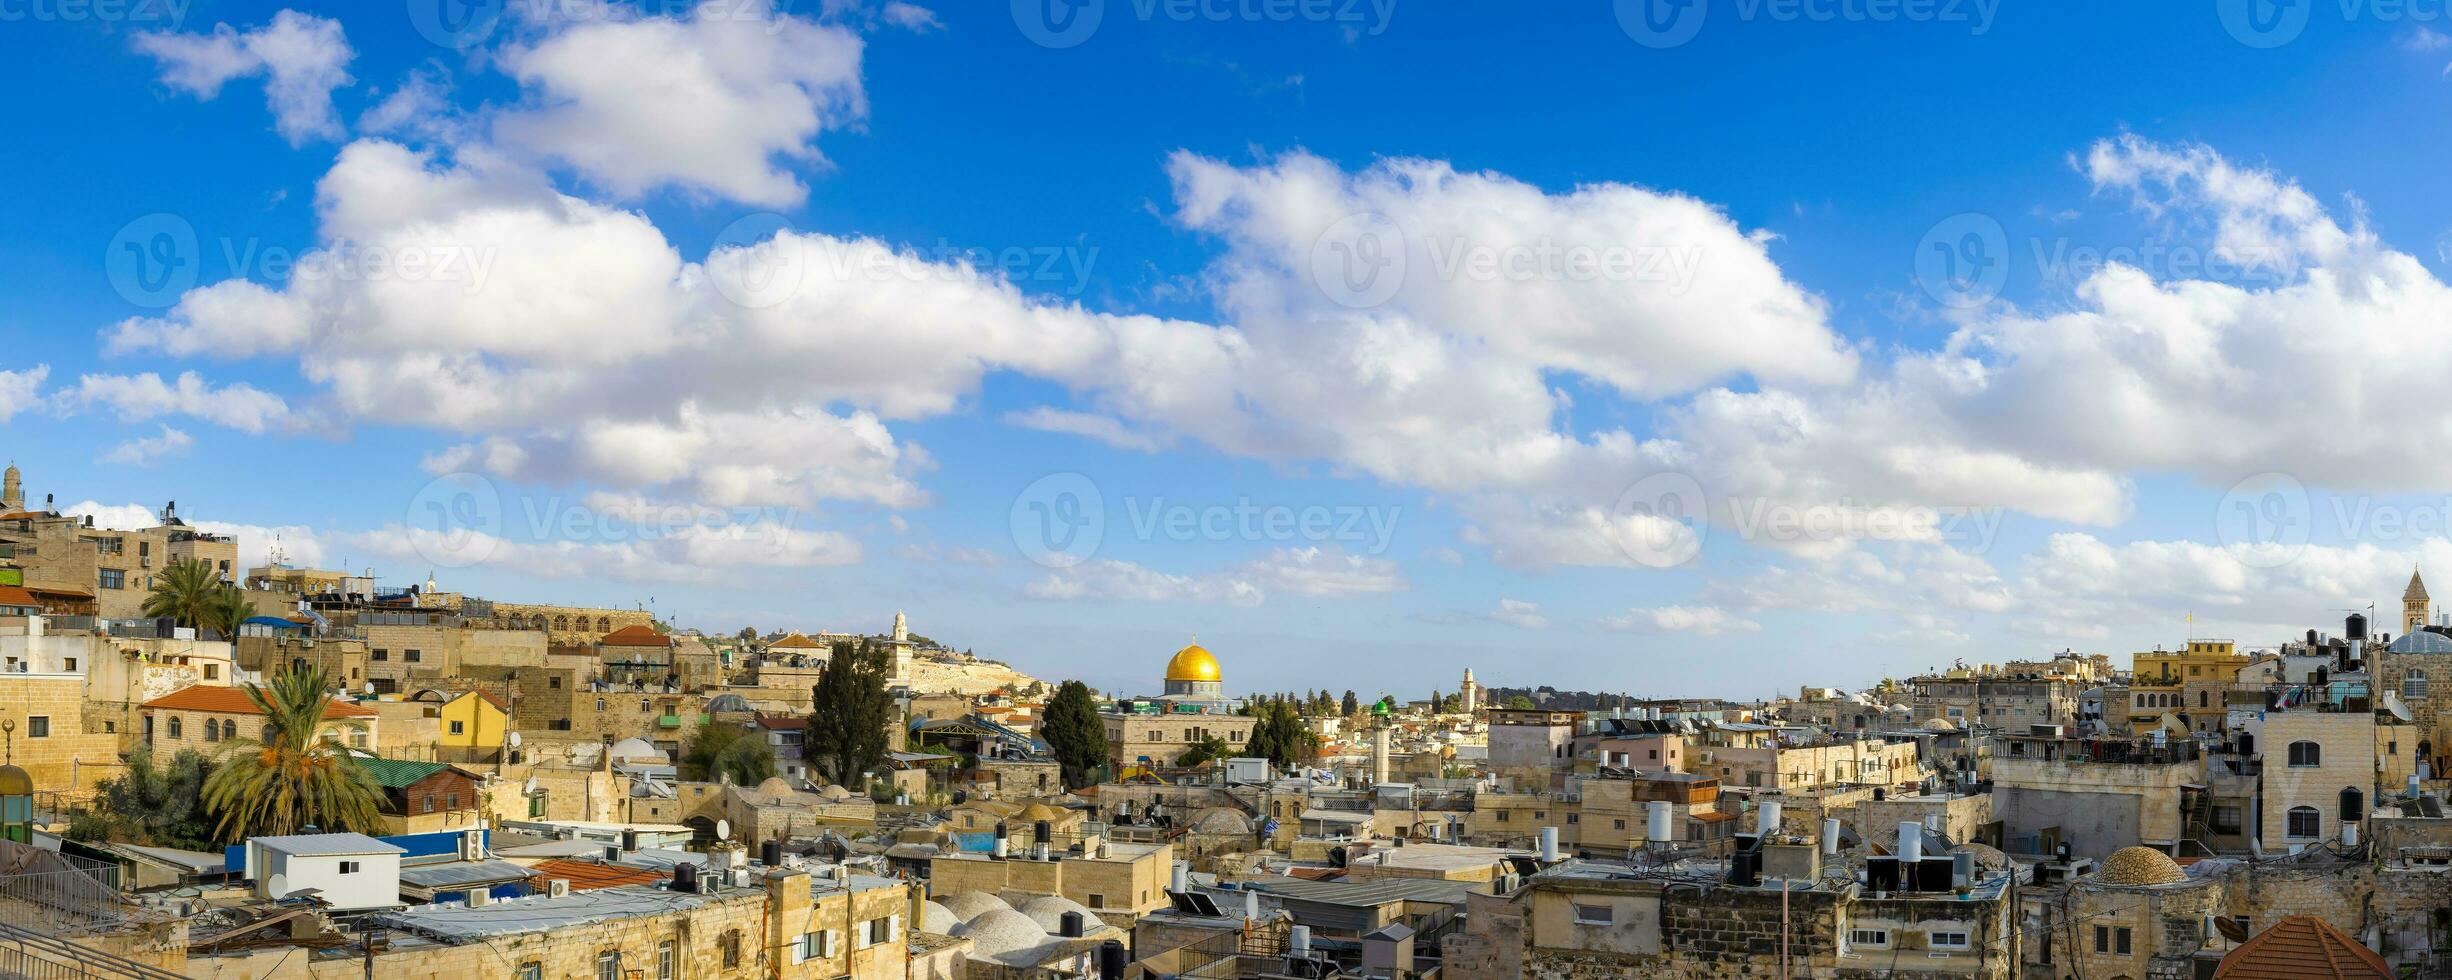 panorama- horisont av jerusalem gammal stad arab fjärdedel nära Västra vägg och kupol av de sten foto